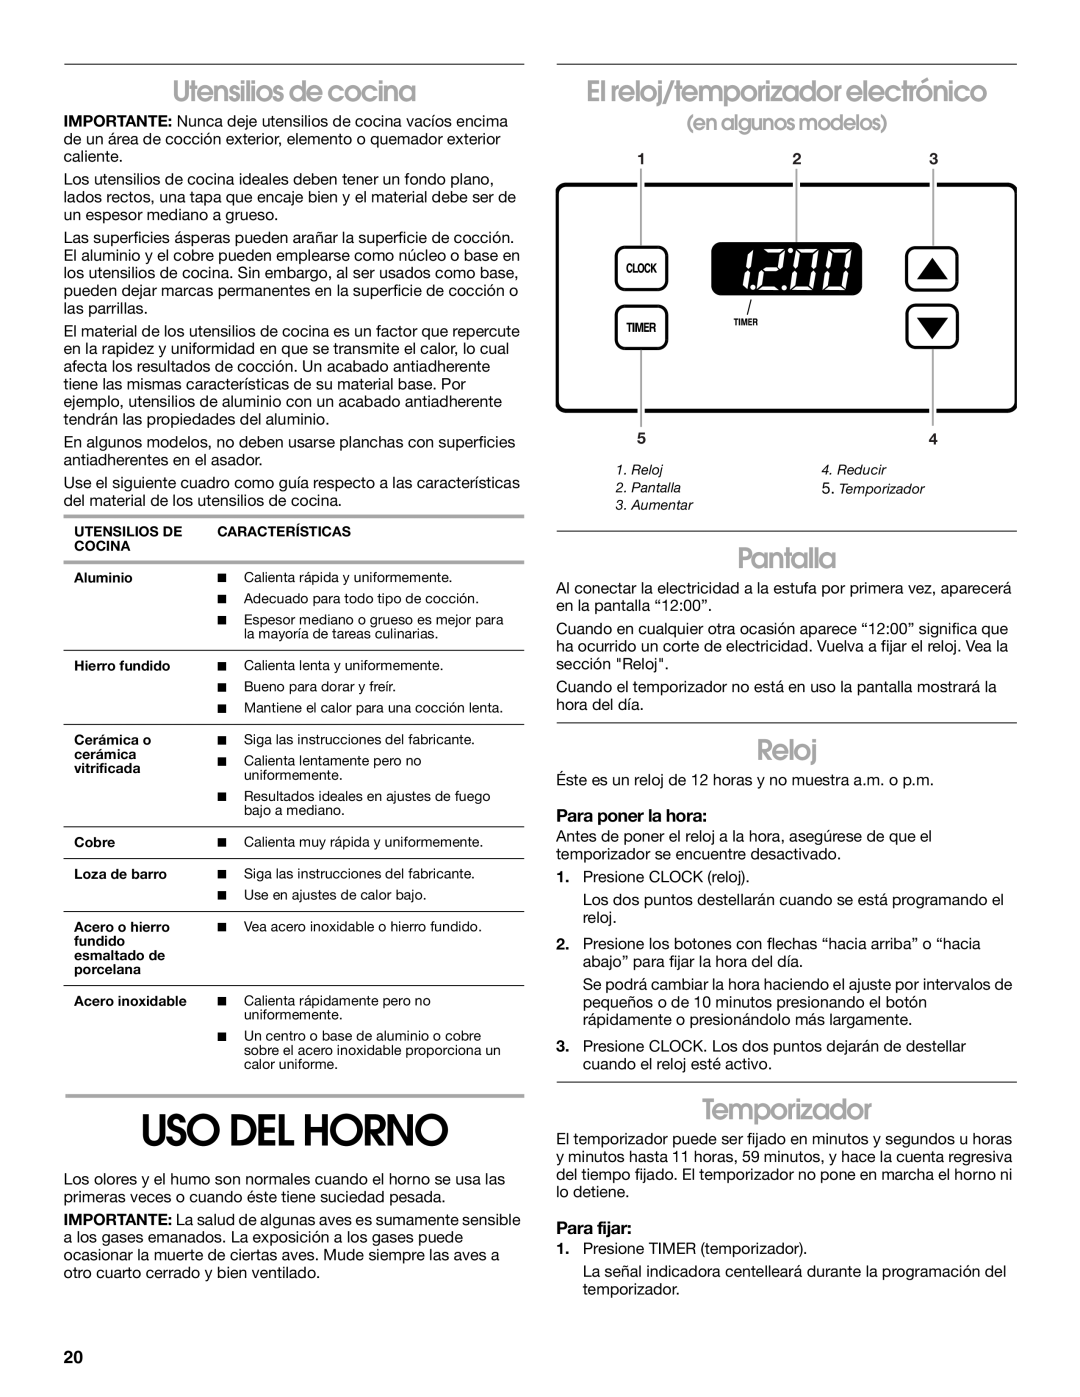 Whirlpool 98014840 Uso Del Horno, Utensilios de cocina, El reloj/temporizador electrónico, Pantalla, Reloj, Temporizador 